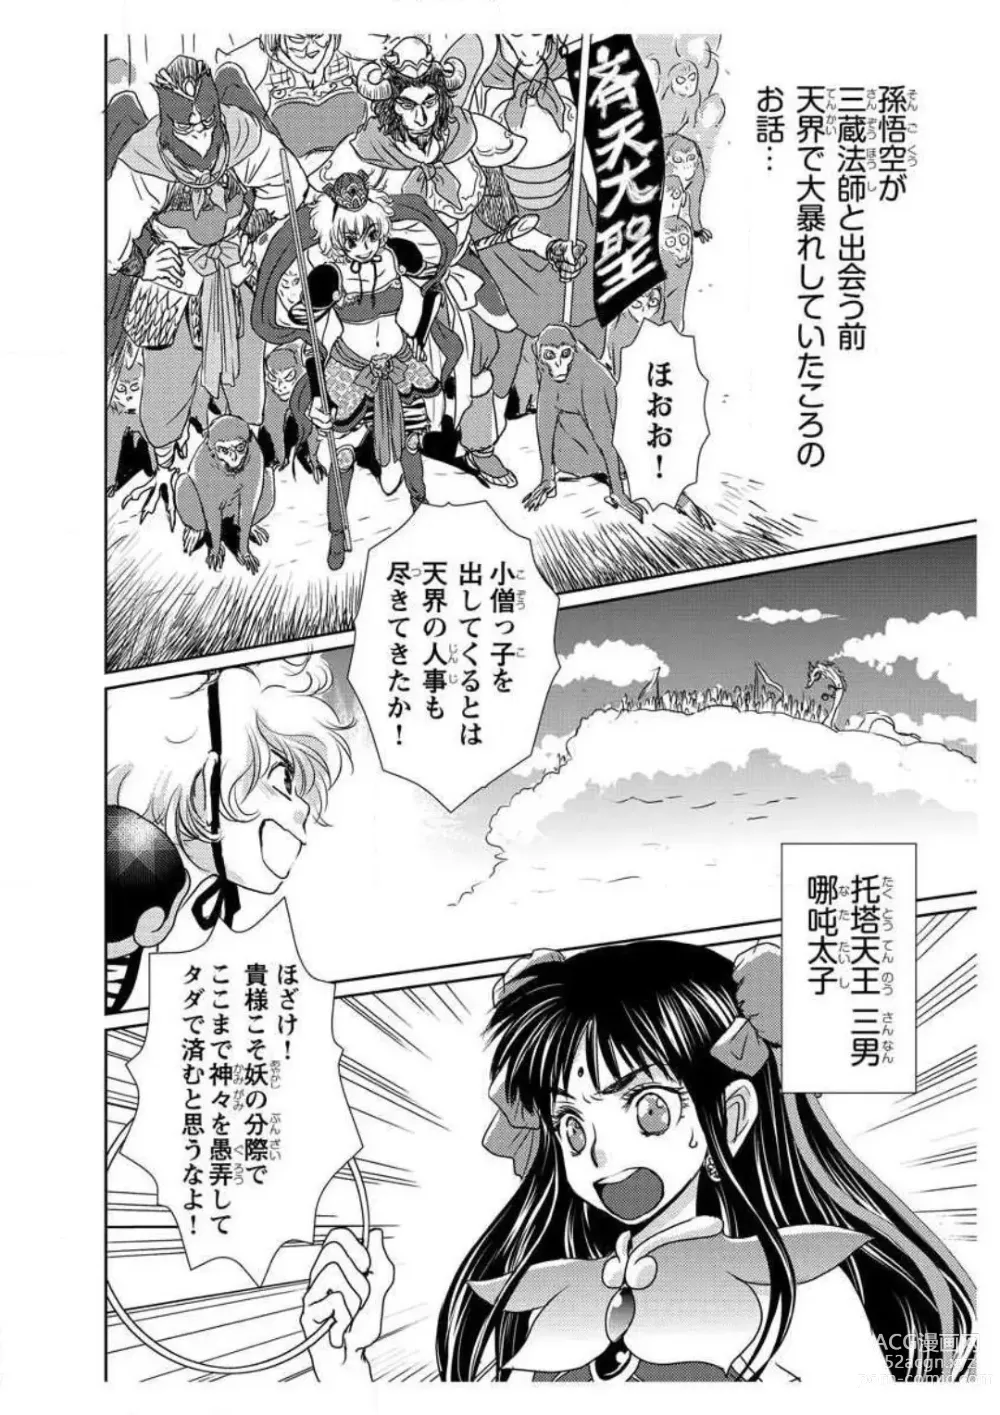 Page 6 of doujinshi Ero Melhen Saiyuuki Gaiden Suirenka